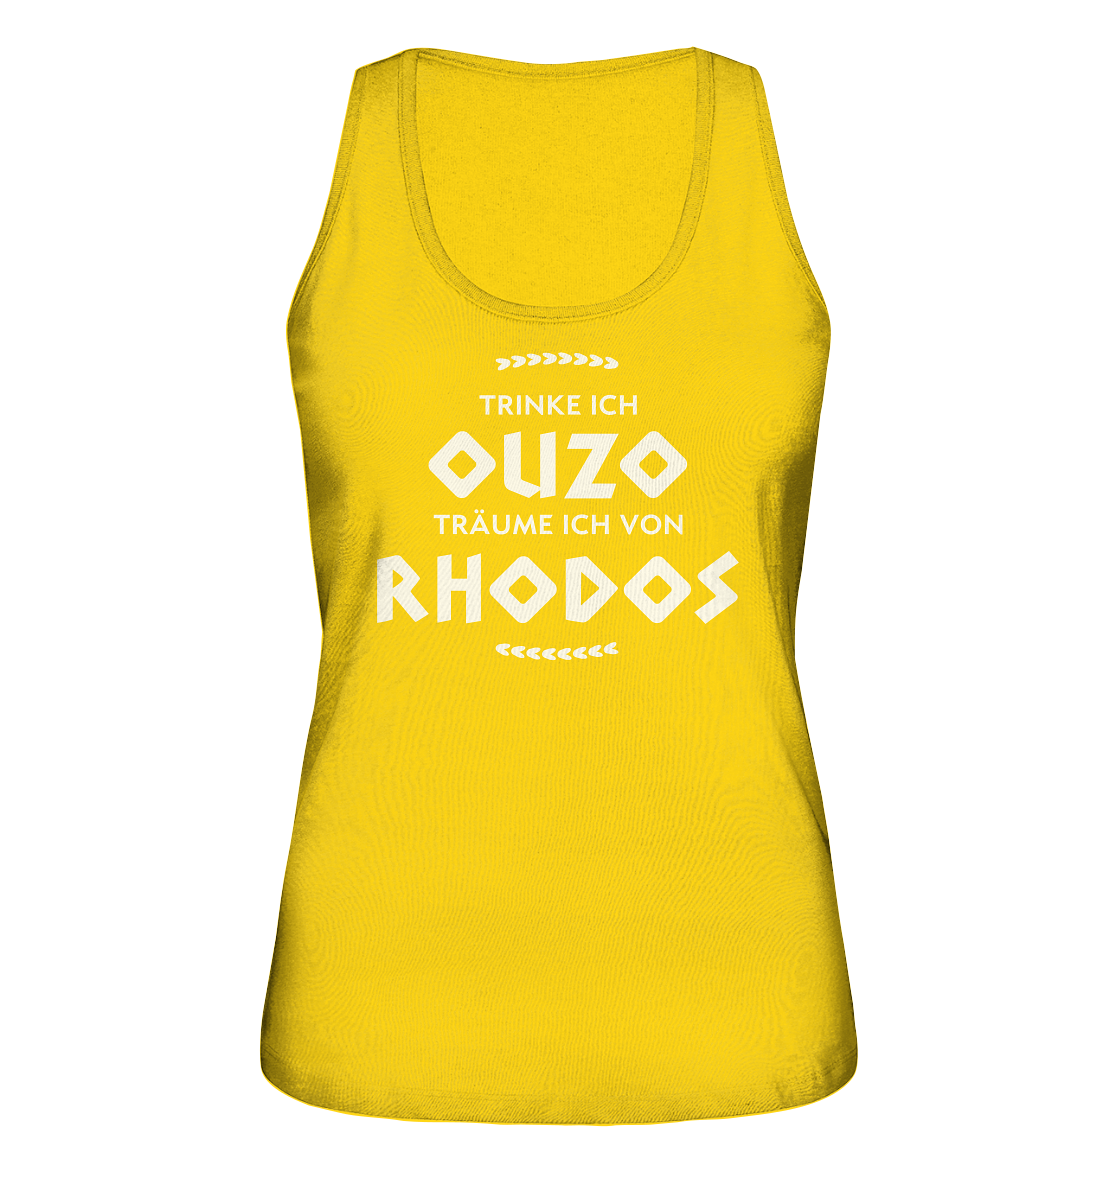 Trinke ich Ouzo träume ich von Rhodos - Ladies Organic Tank-Top